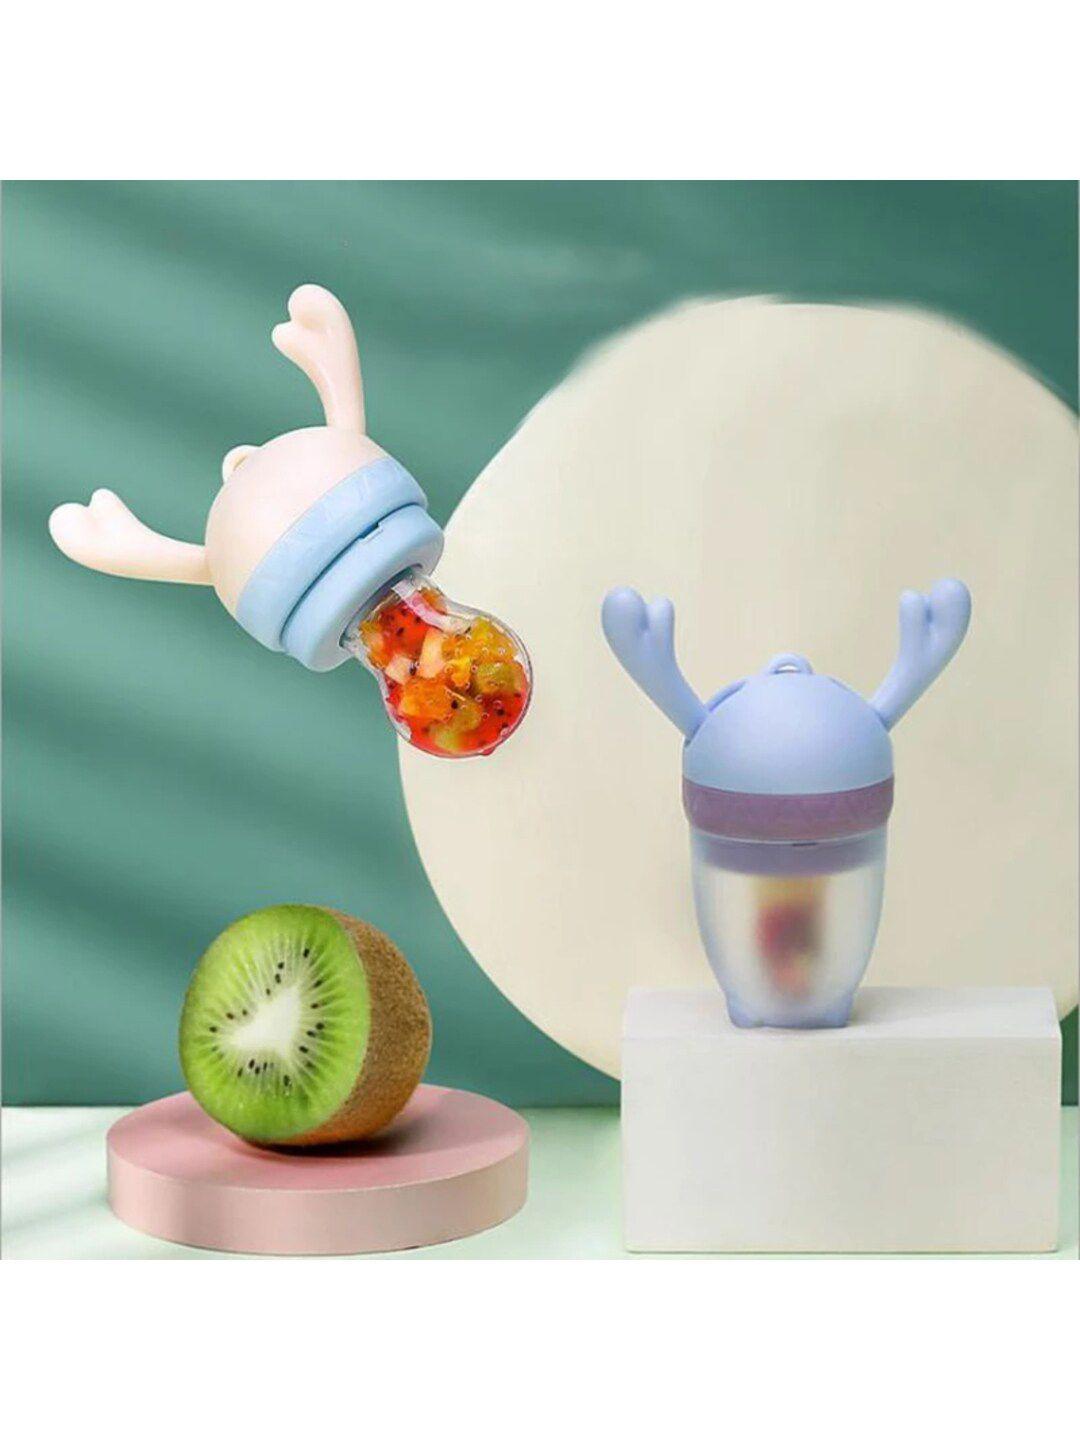 guchigu peach & blue baby food fruit nibbler pacifier & bpa free teether